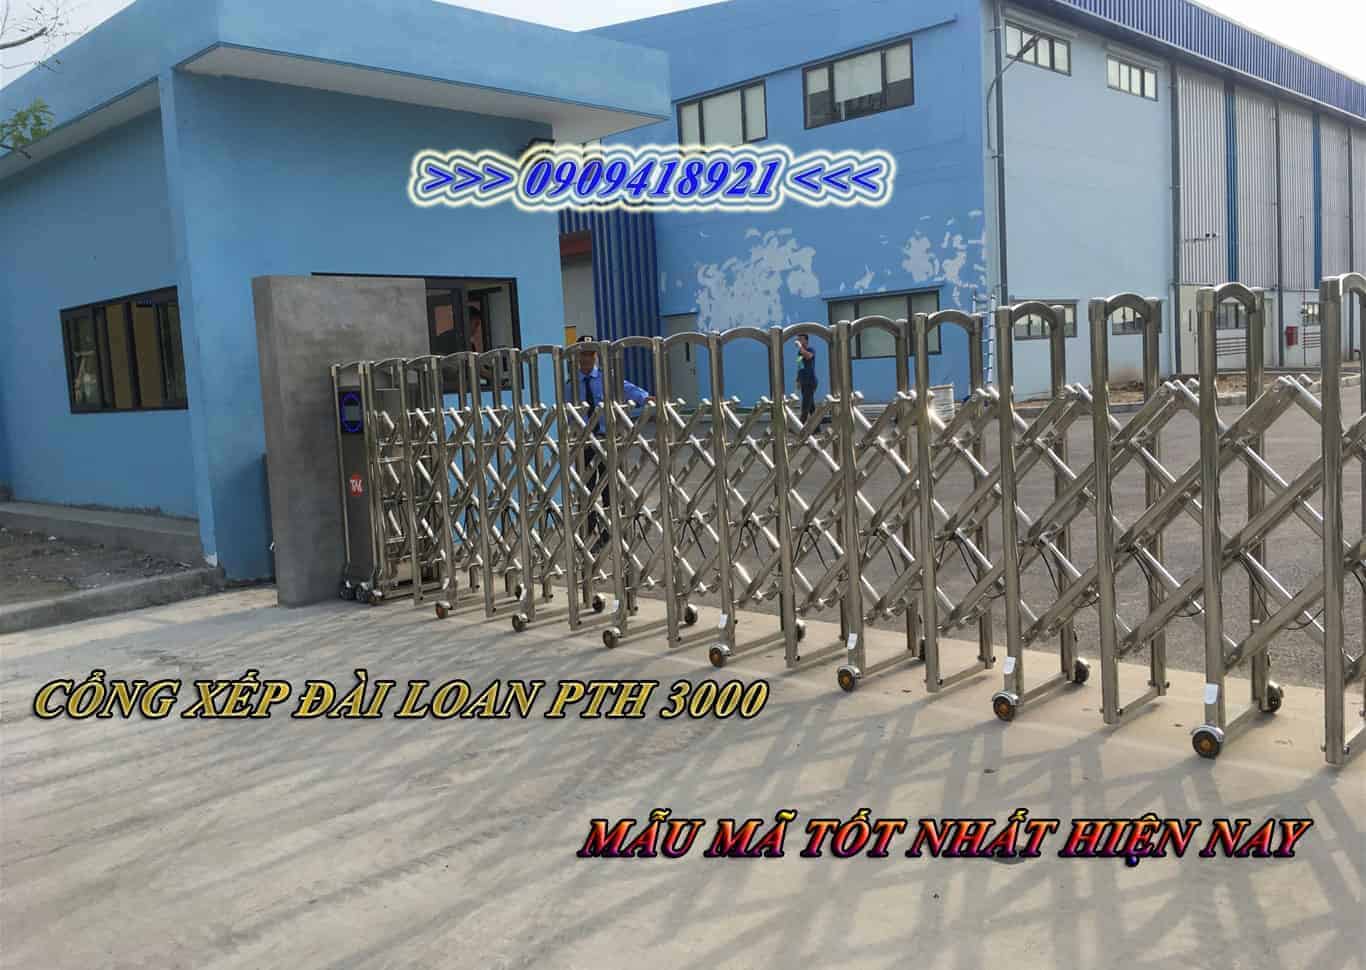 Lắp đặt cổng xếp đài loan cho nhà máy tại Nha Trang